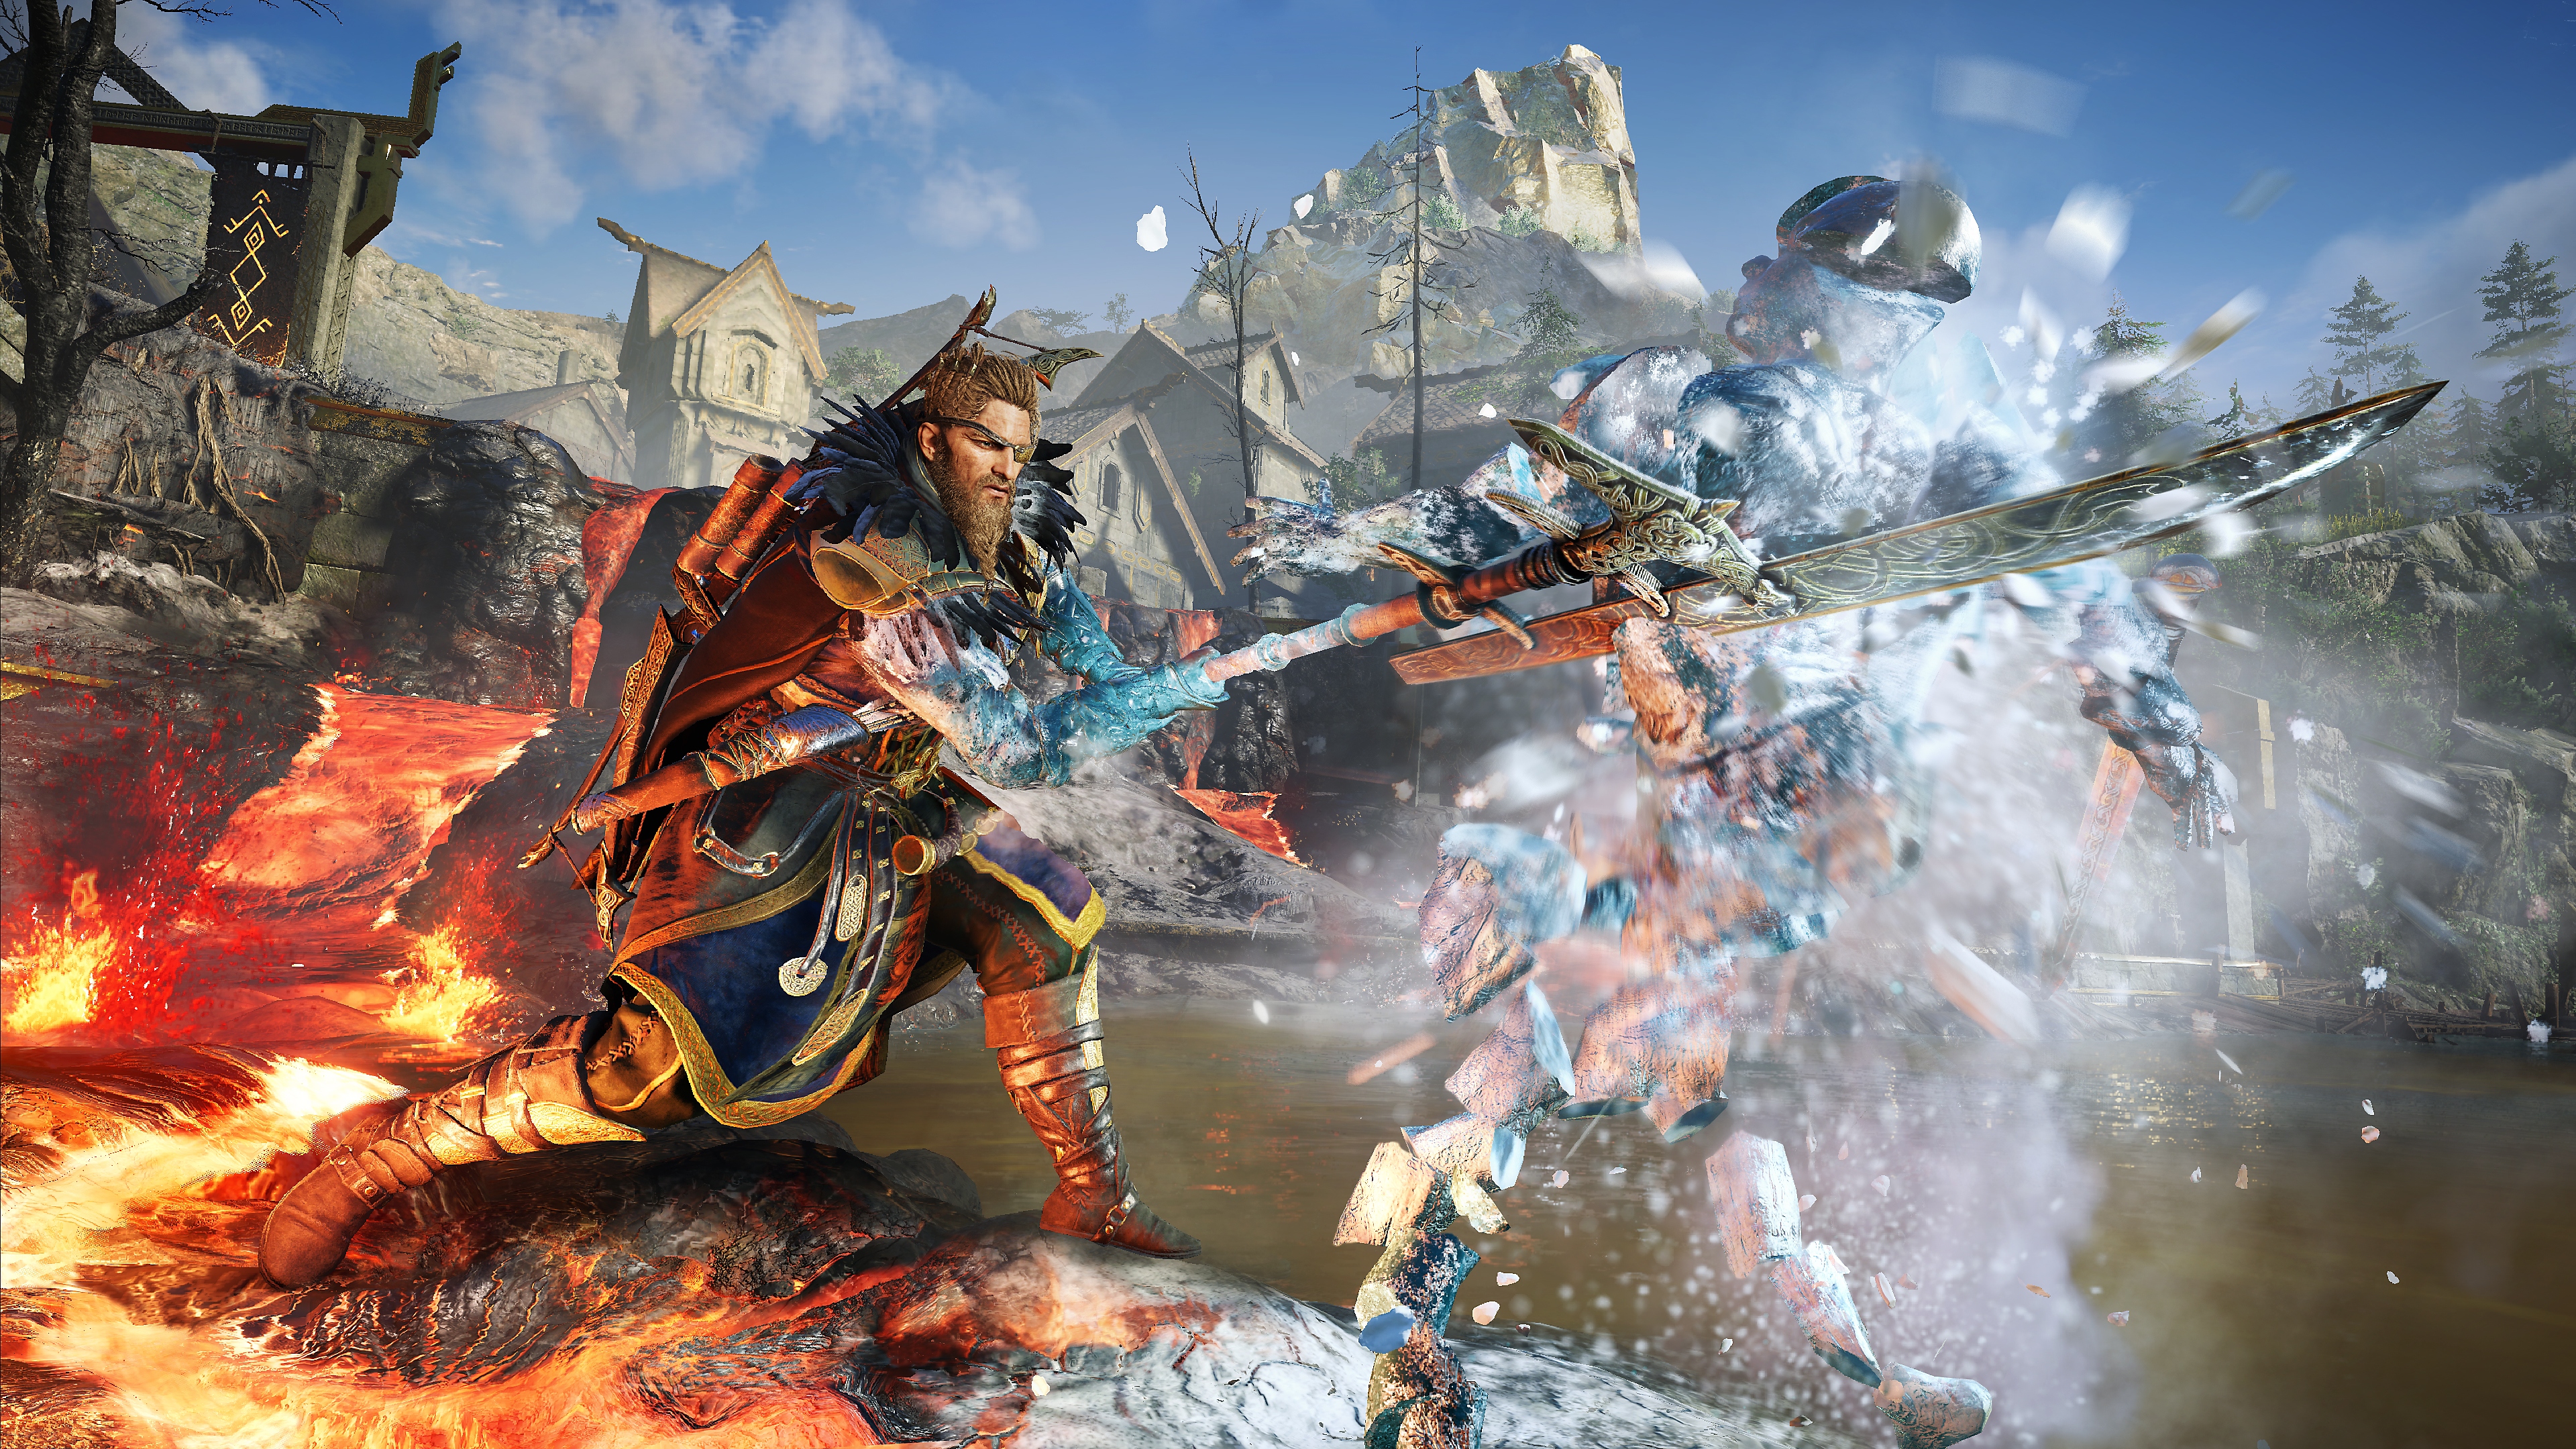 Captura de pantalla de Assassin's Creed Valhalla El amanecer del Ragnarök que muestra al protagonista haciendo añicos a un enemigo de hielo con una lanza